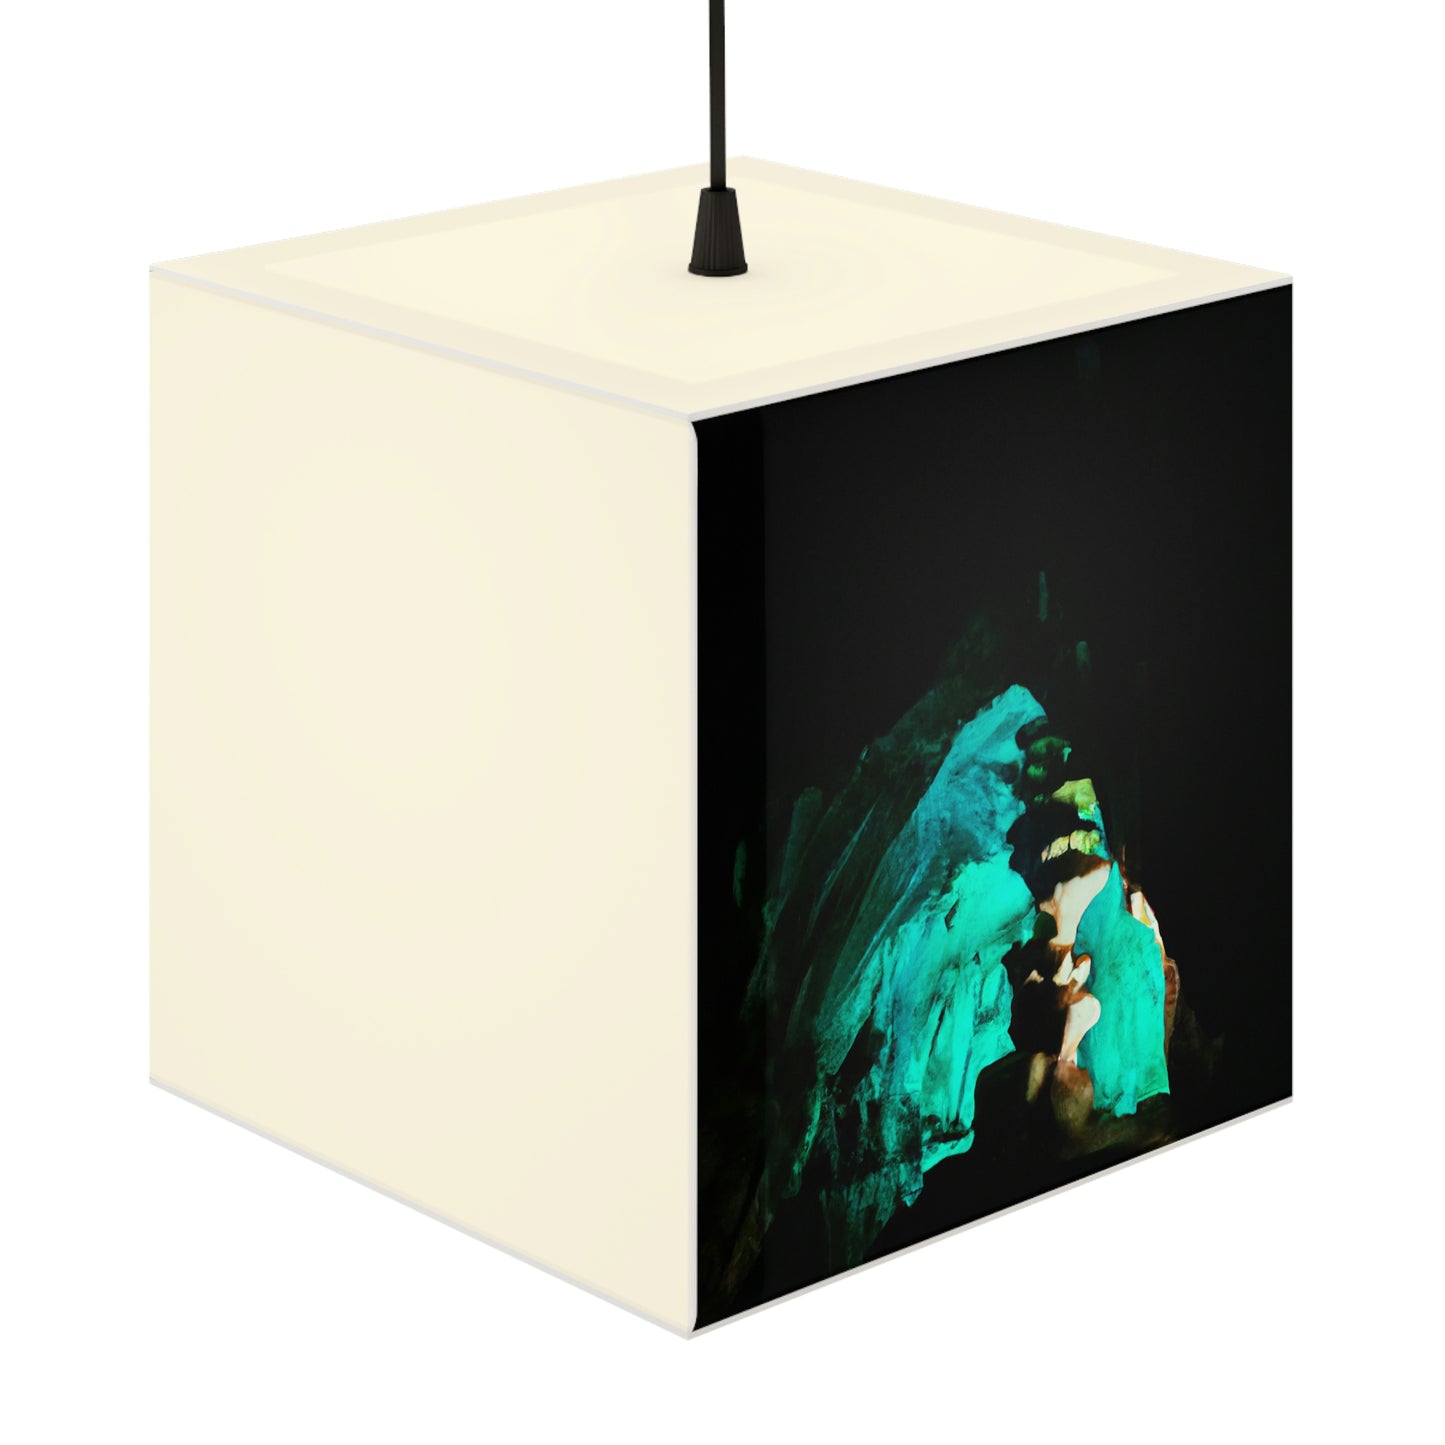 La reliquia reluciente de la cueva: la lámpara del cubo de luz alienígena